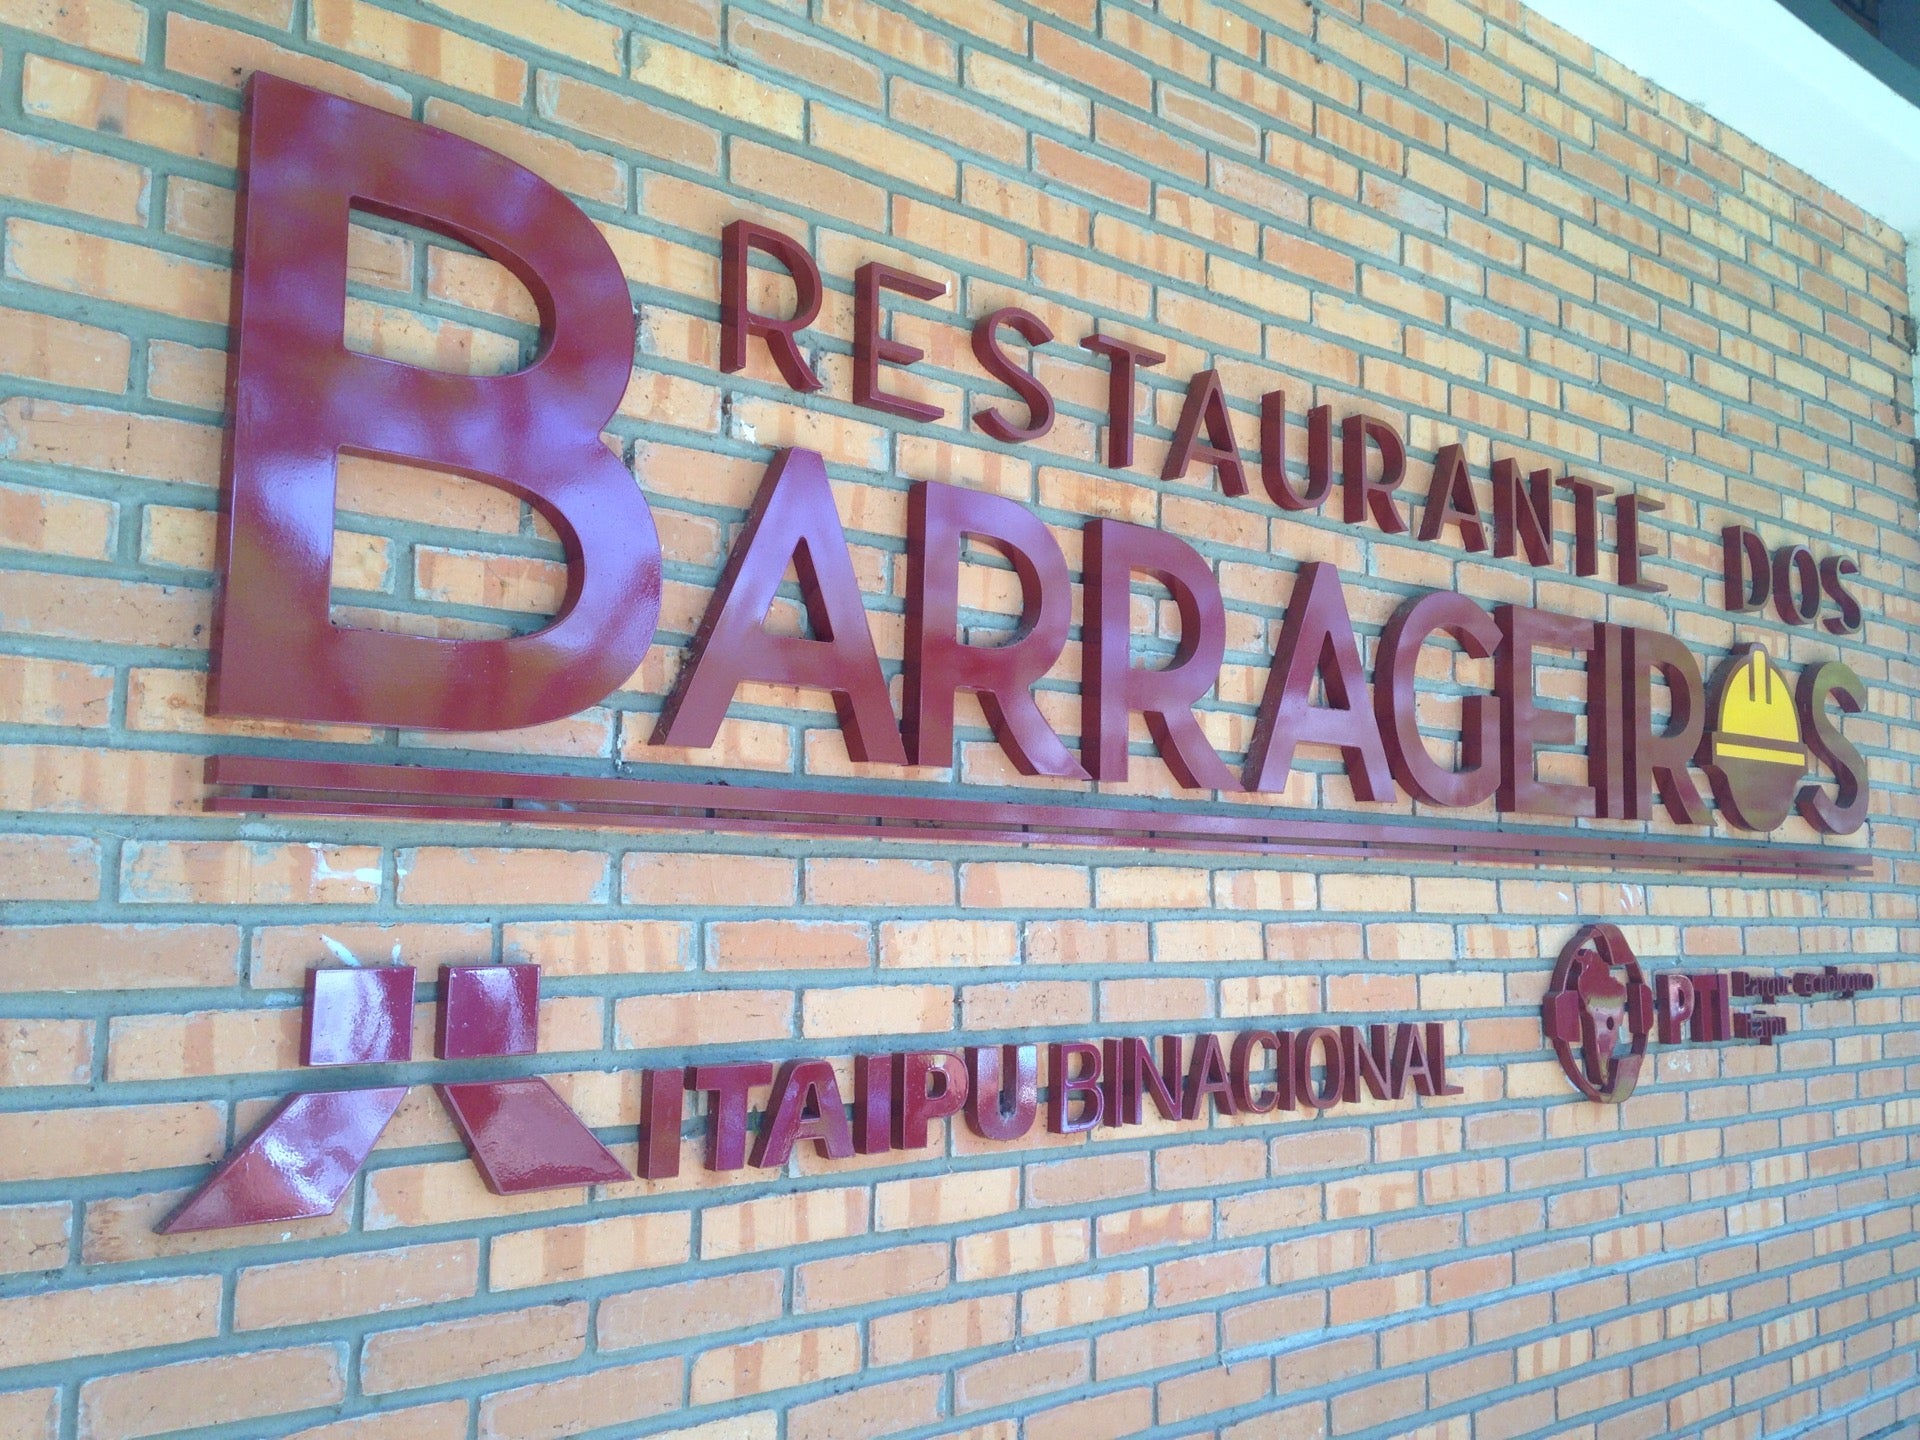 Restaurante dos Barrageiros